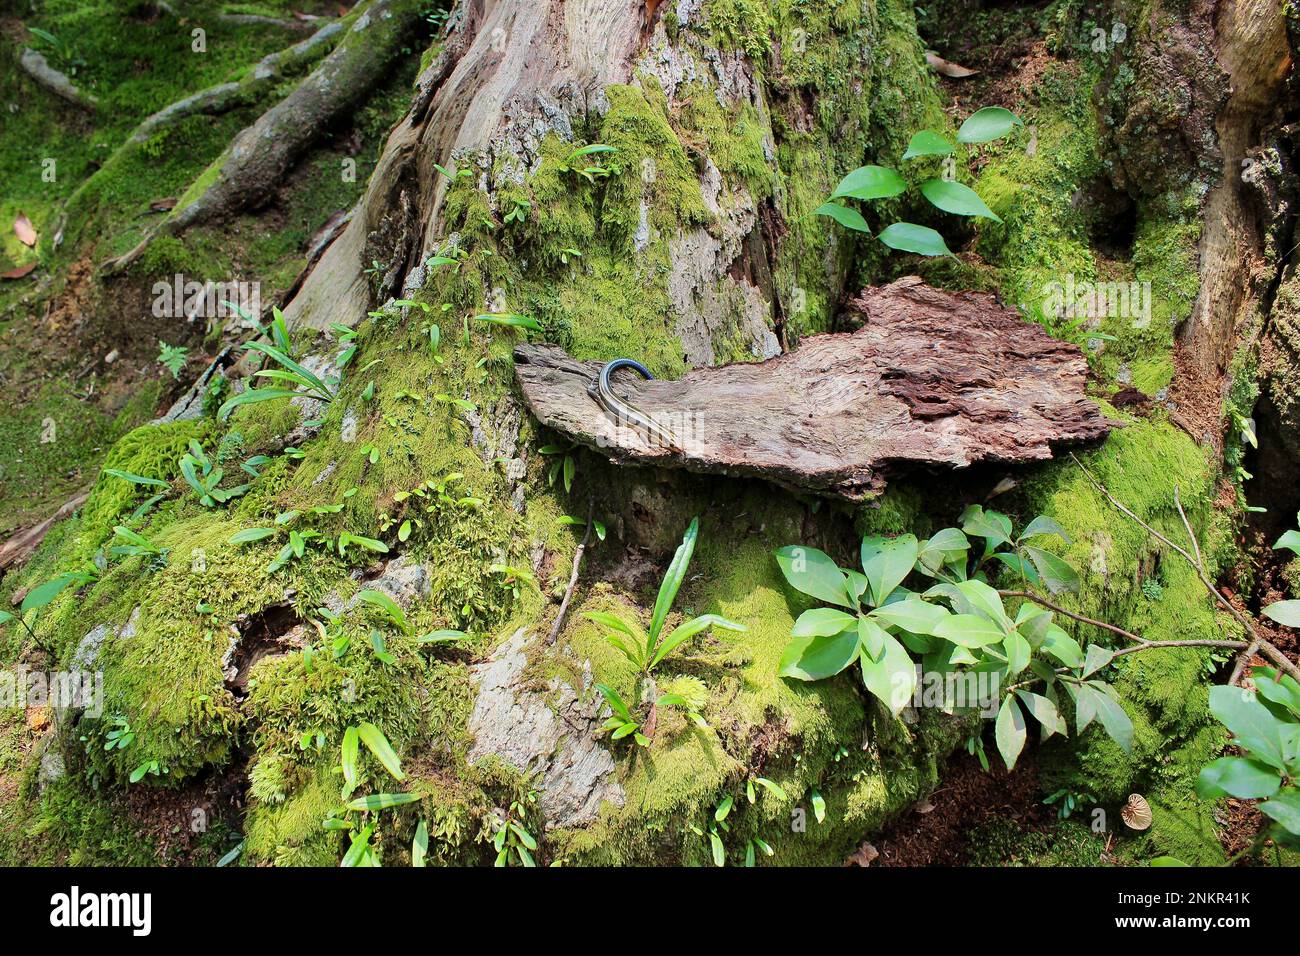 Photo longue distance d'un lézard coloré couché sur du bois dans un conte de fées comme un environnement vert luxuriant. Banque D'Images